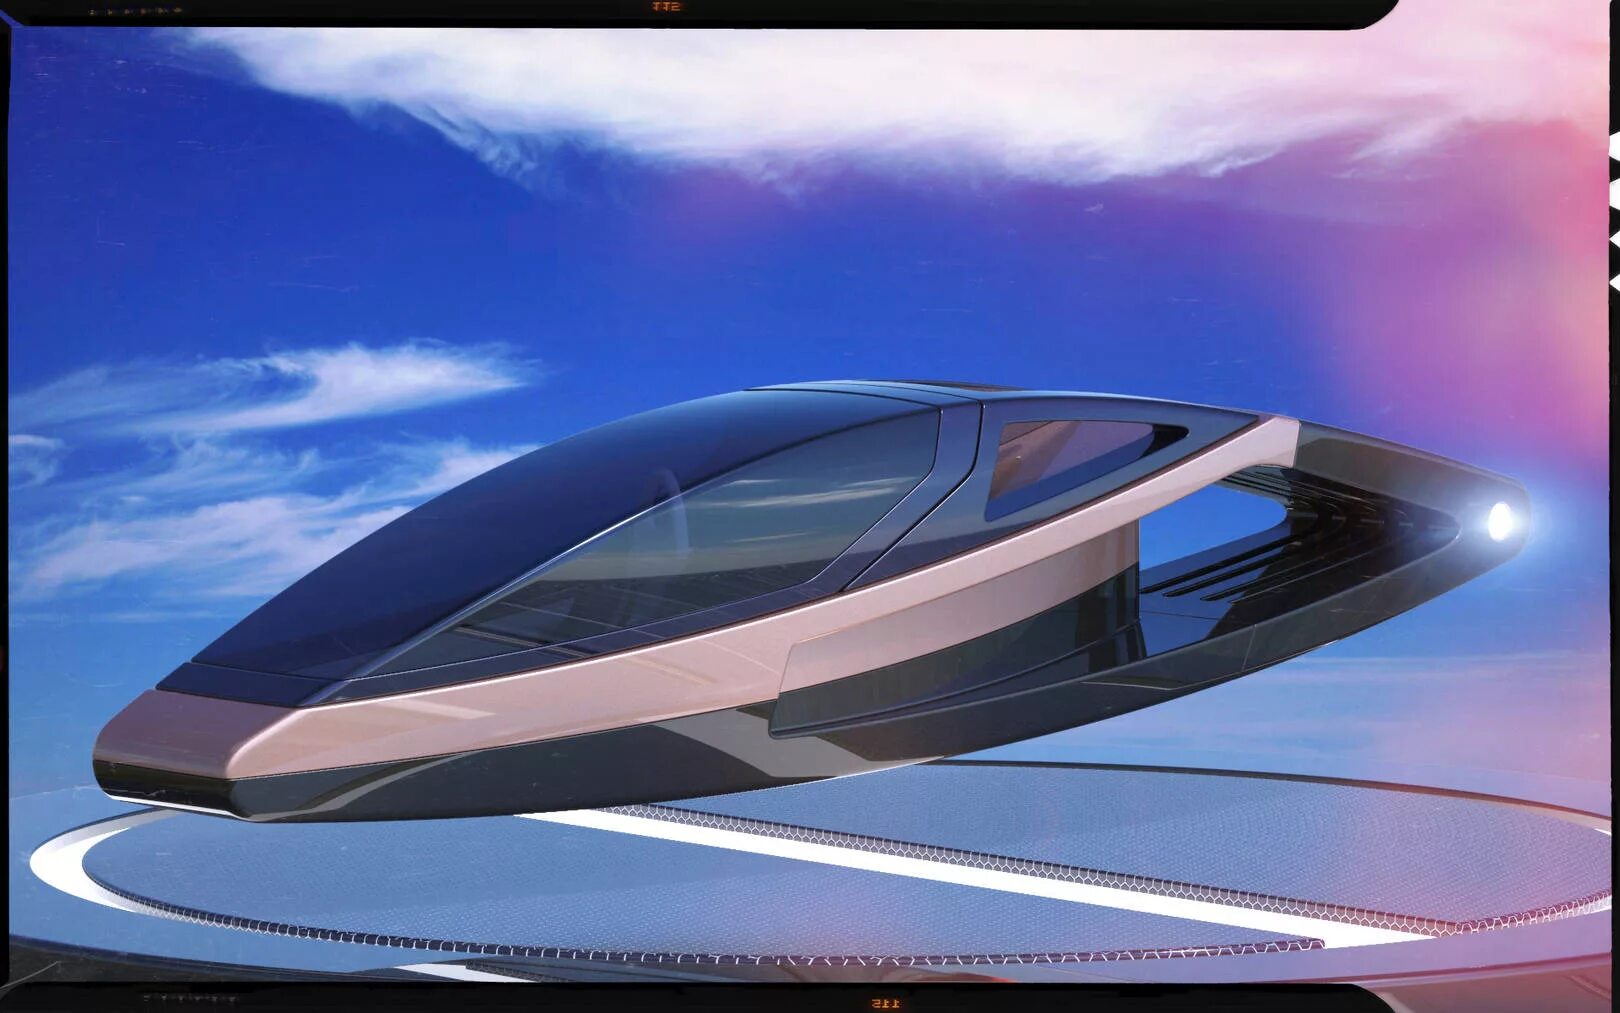 Средство будущее. Транспорт будущего. Городской транспорт будущего. Дизайн транспорта будущего. Летающий трамвай будущего.